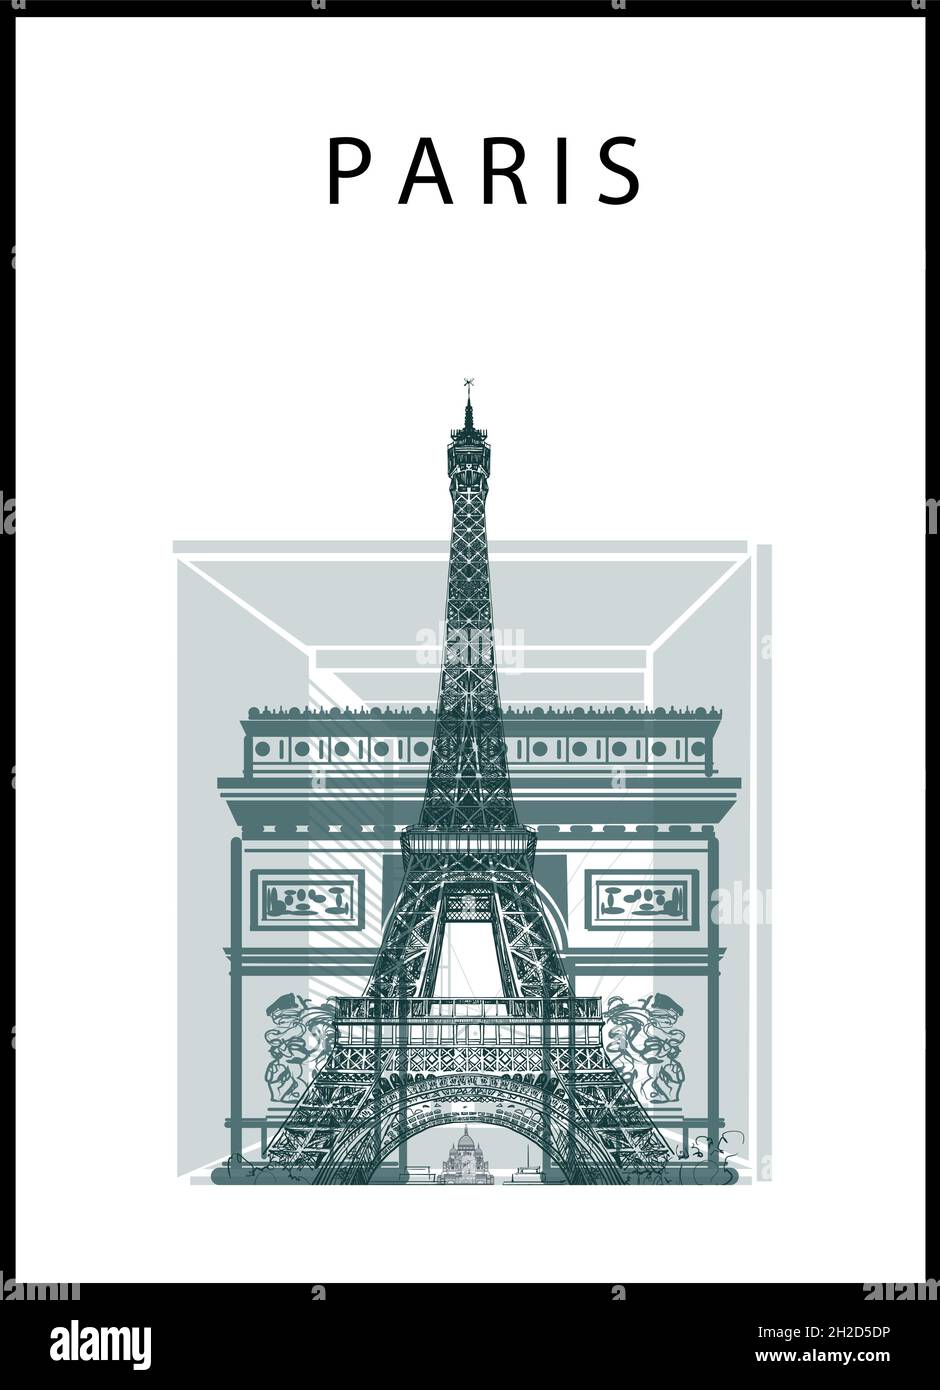 Paris poster with Eiffel tower, arc de triomphe; Grande arche and sacre ...